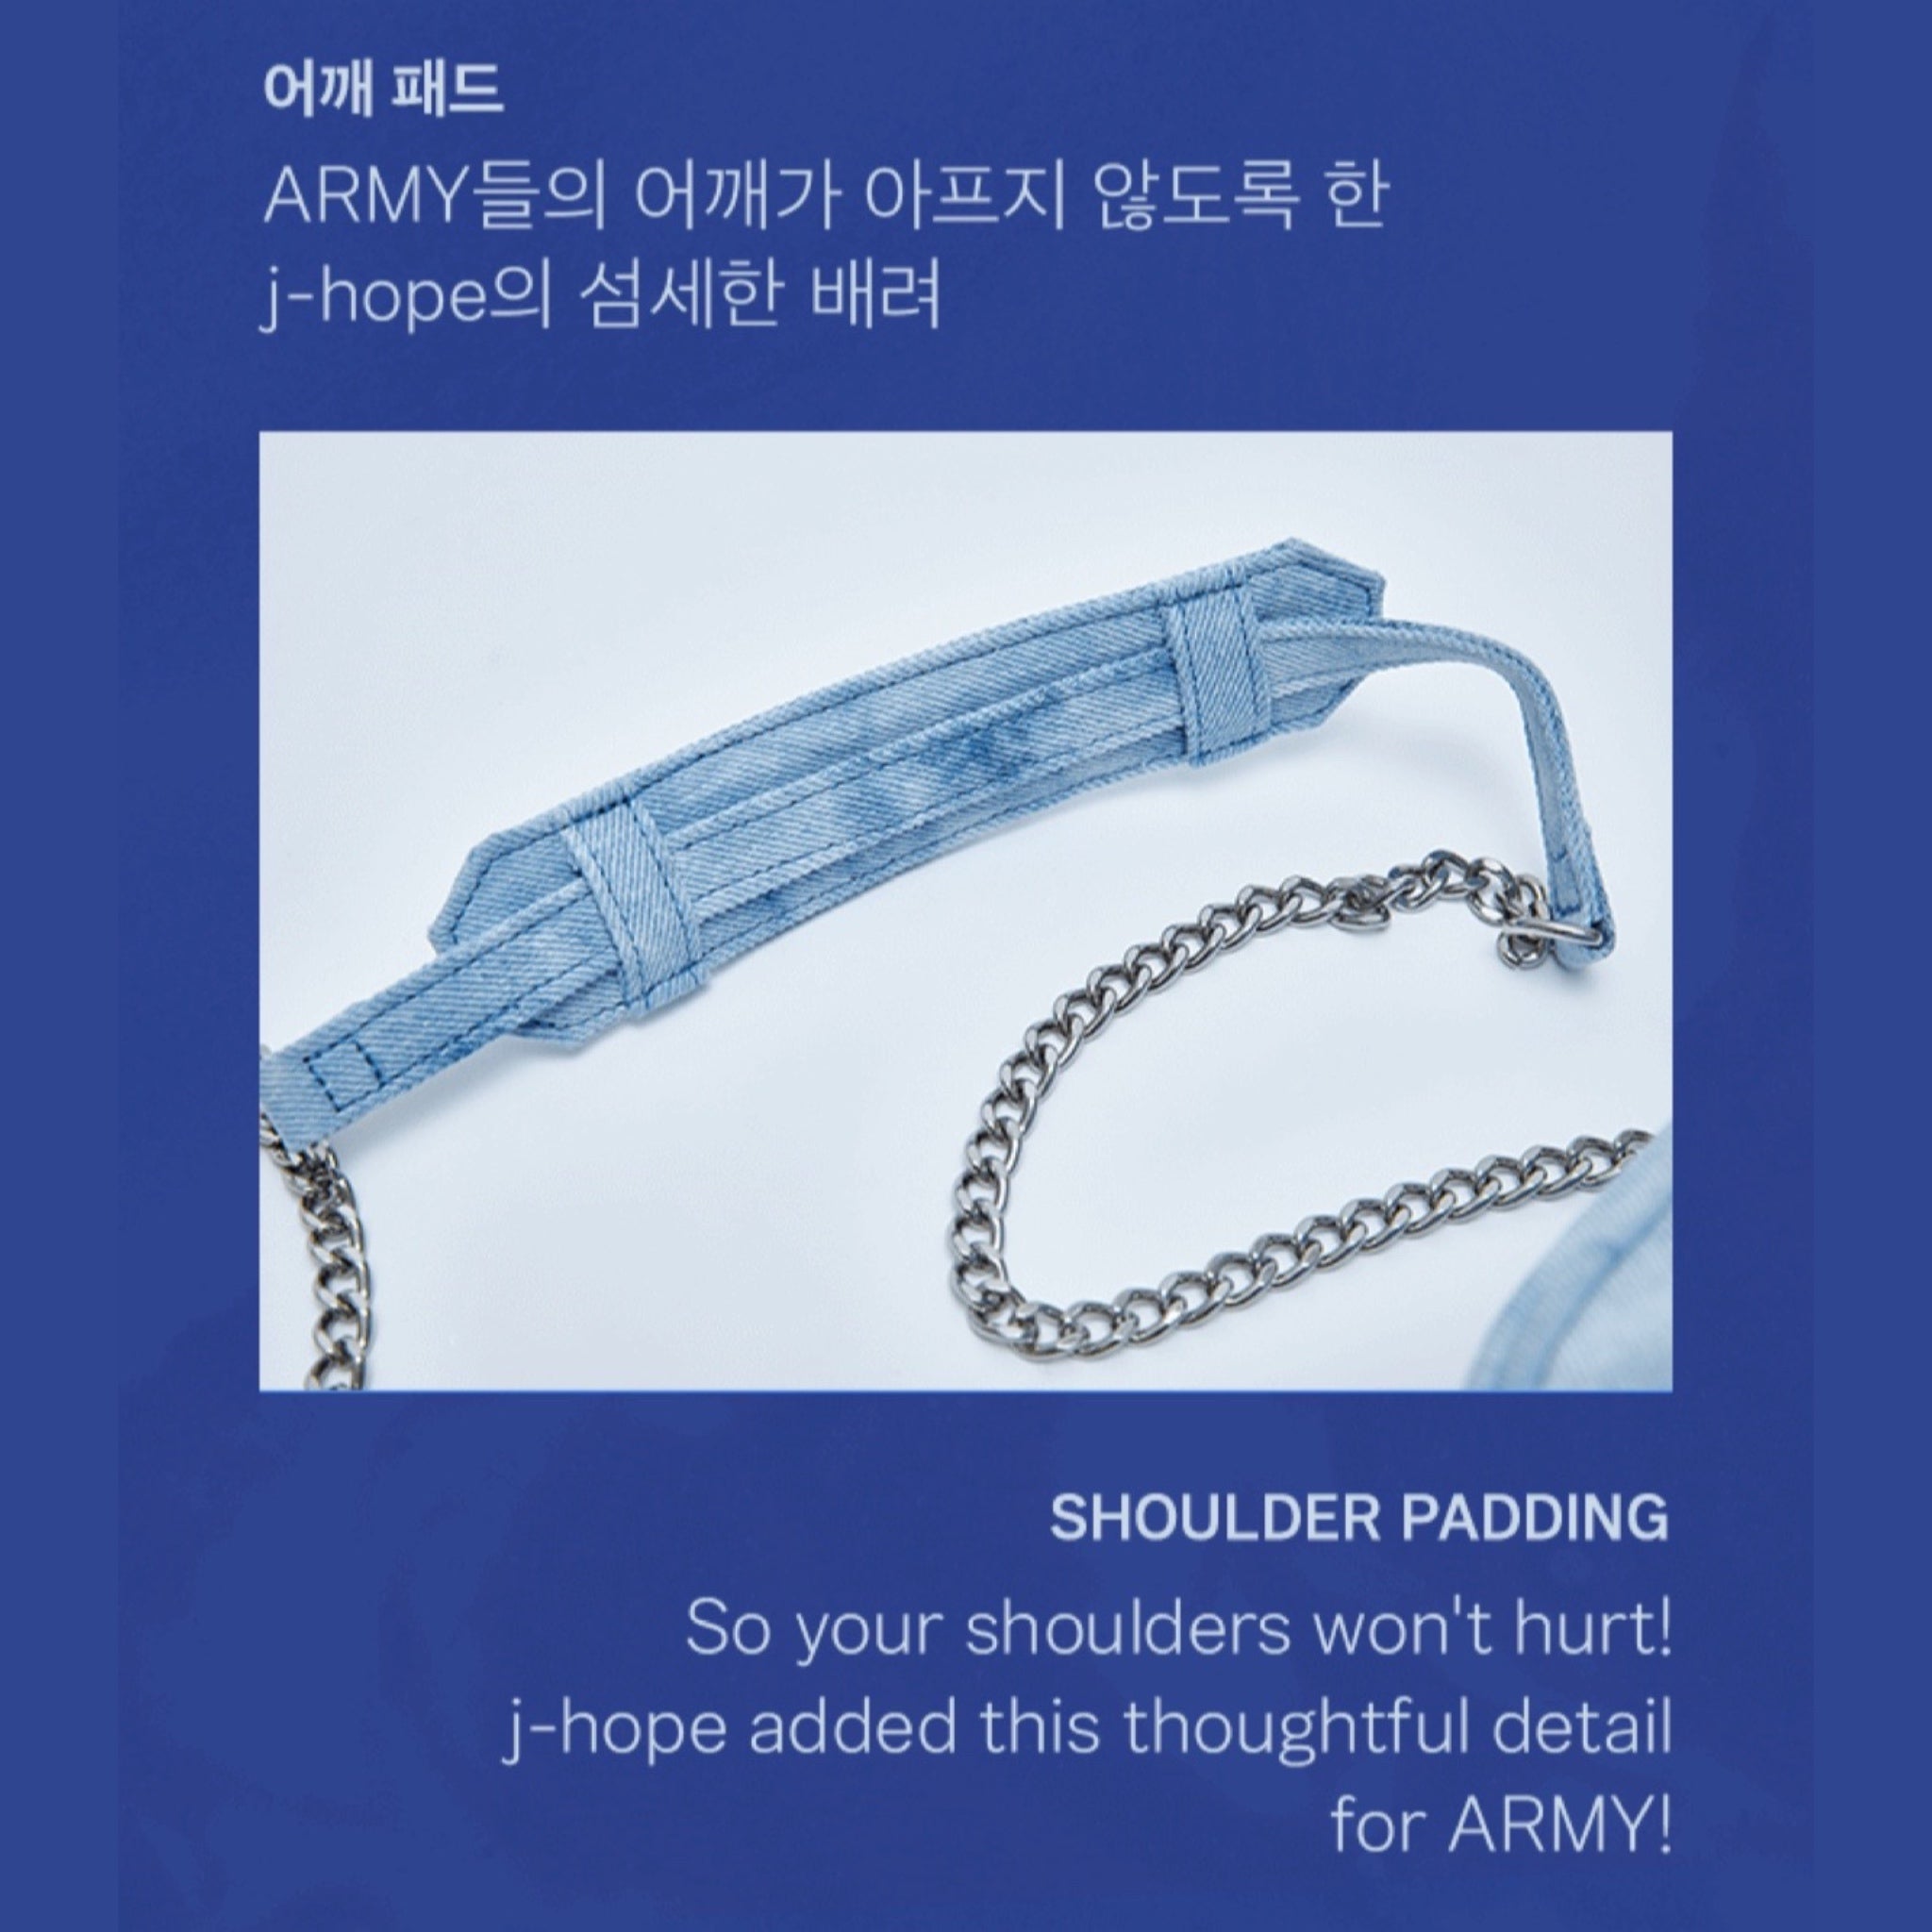 BTS J-Hope Side by Side Mini Bag